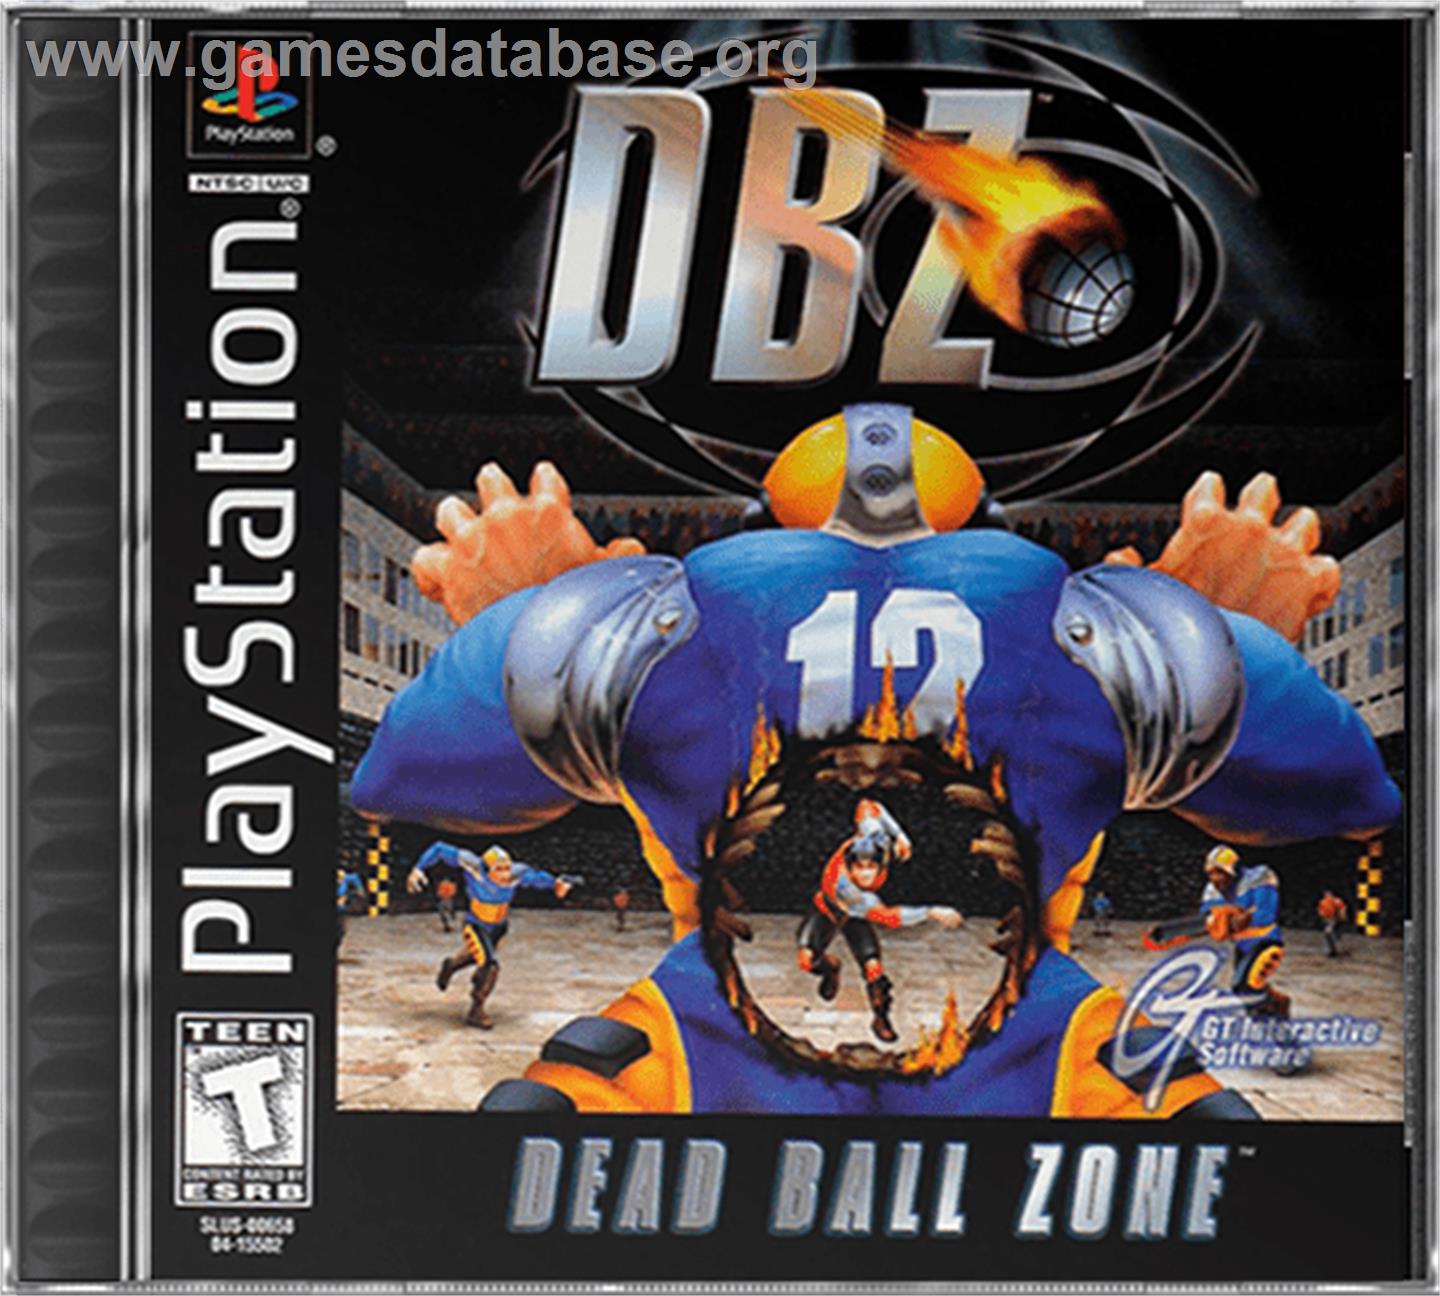 DBZ: Dead Ball Zone - Sony Playstation - Artwork - Box